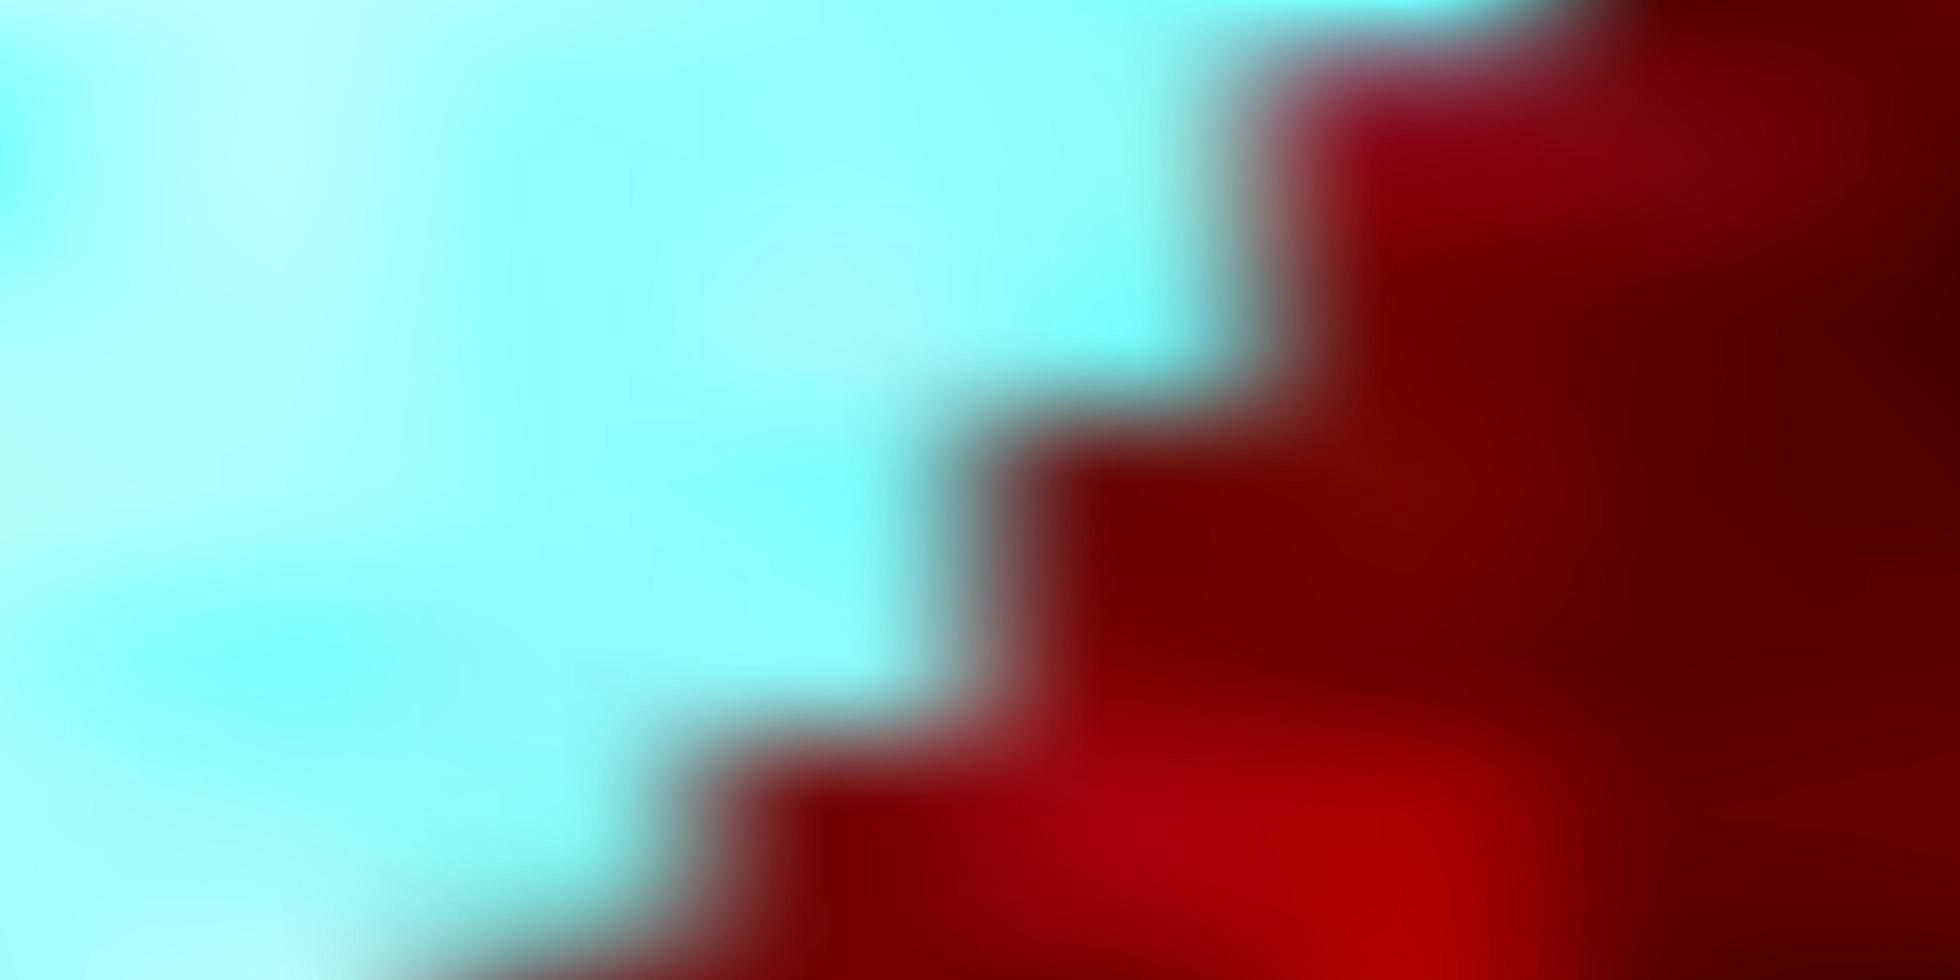 sfondo sfocato astratto vettoriale rosso chiaro